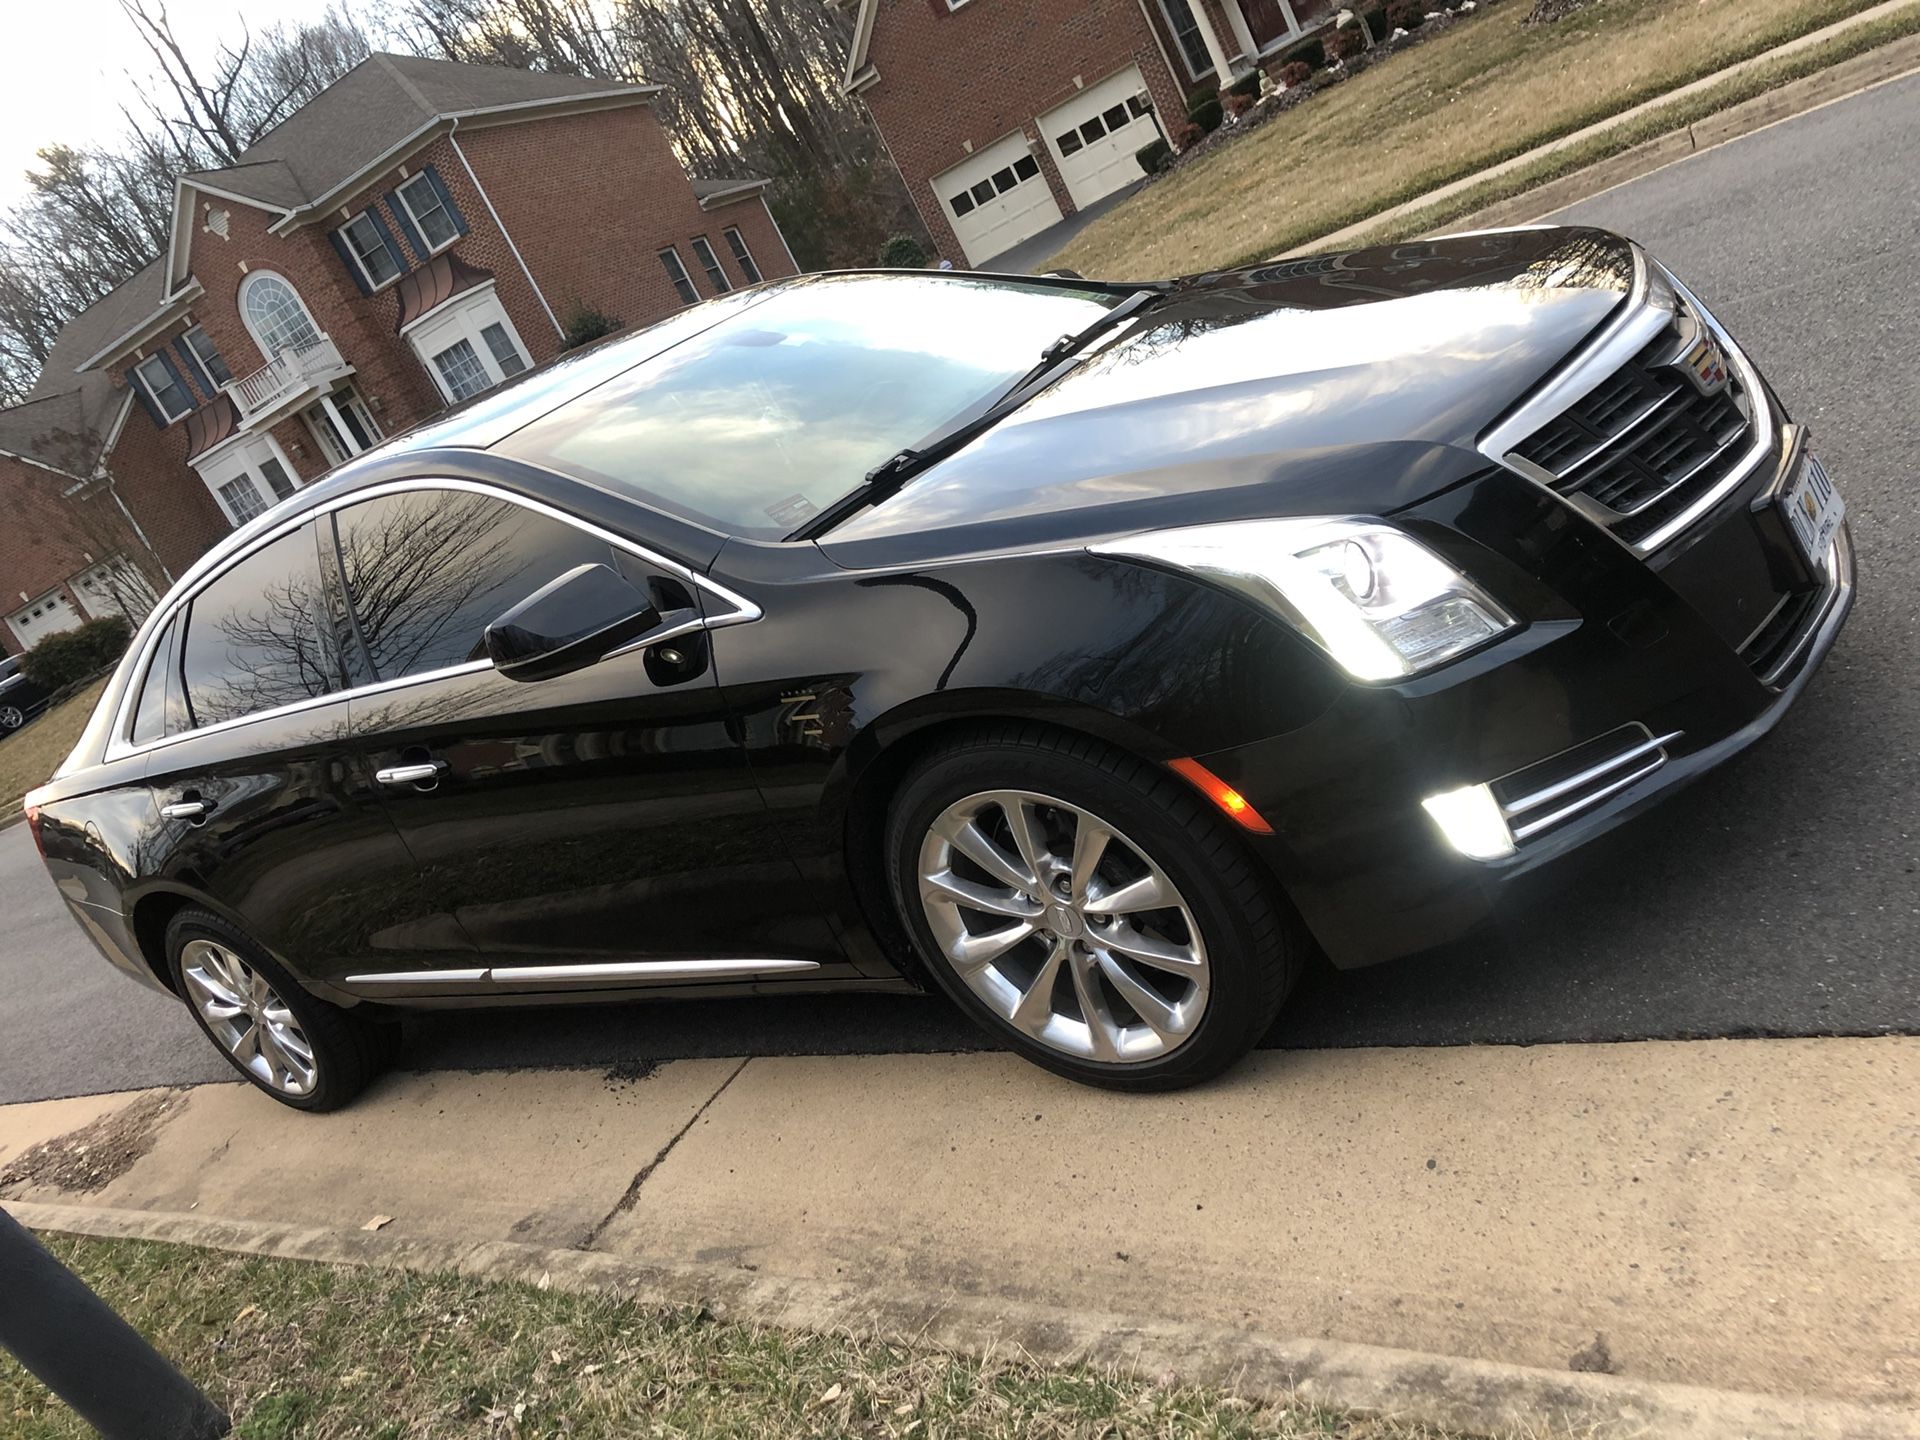 2016 Cadillac XTS